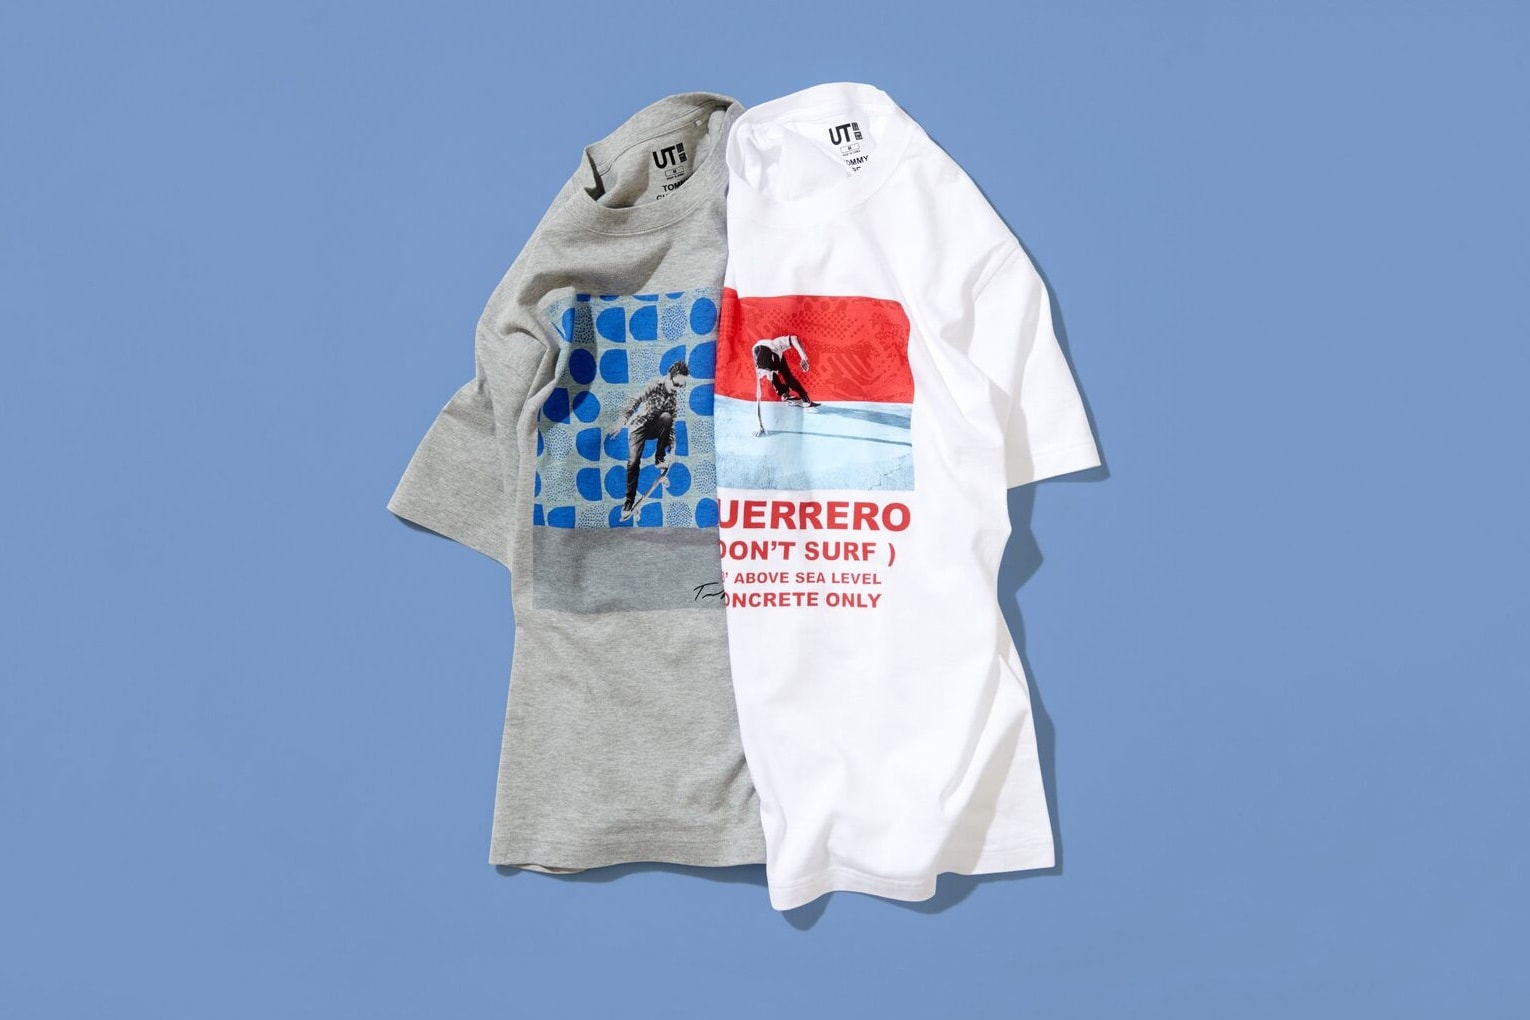 Uniqlo UT よりトミー・ゲレロとタッグを組んだTシャツコレクションが登場